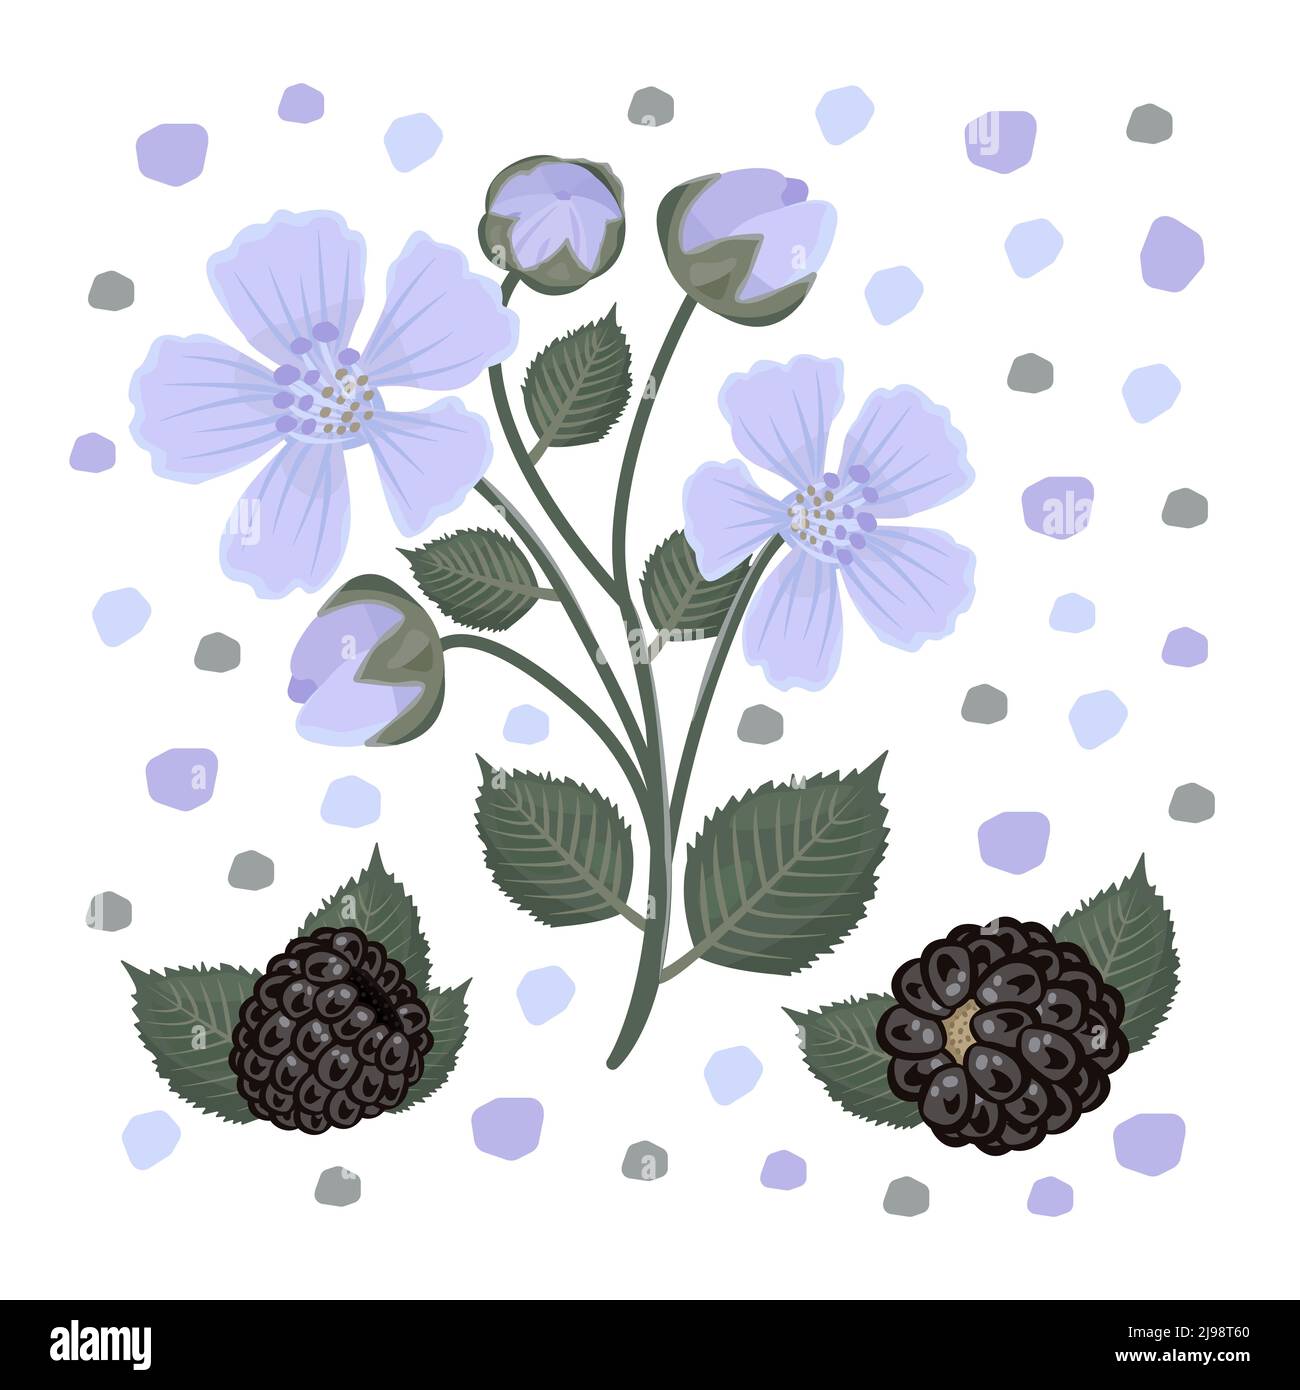 Brombeerblüten und Beeren, Illustration Stock Vektor